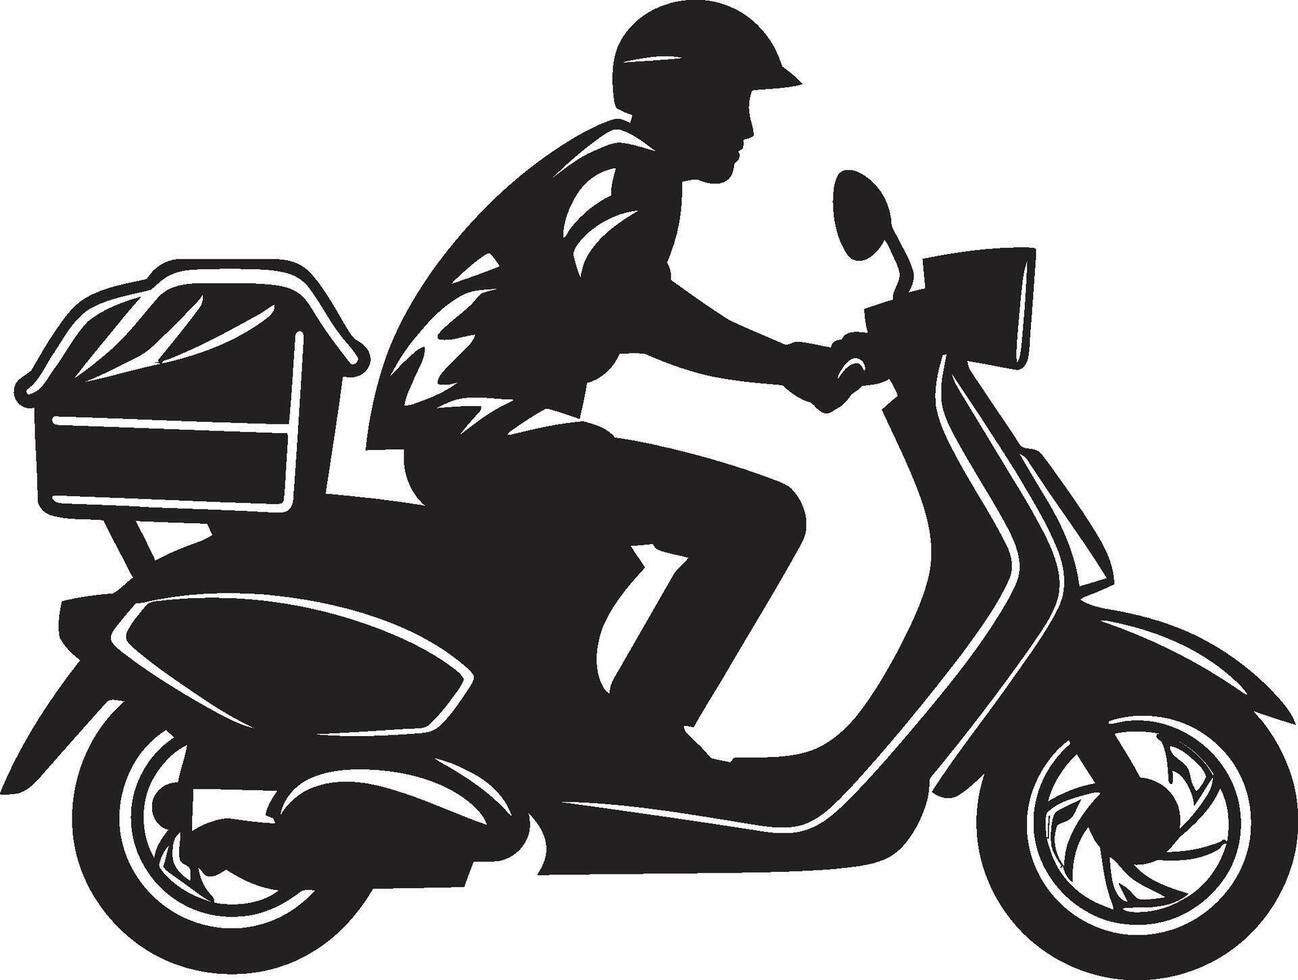 rapide octet courrier scooter homme icône pour rapide nourriture laissez tomber off scoot n servir speedster vecteur conception pour scooter nourriture livraison